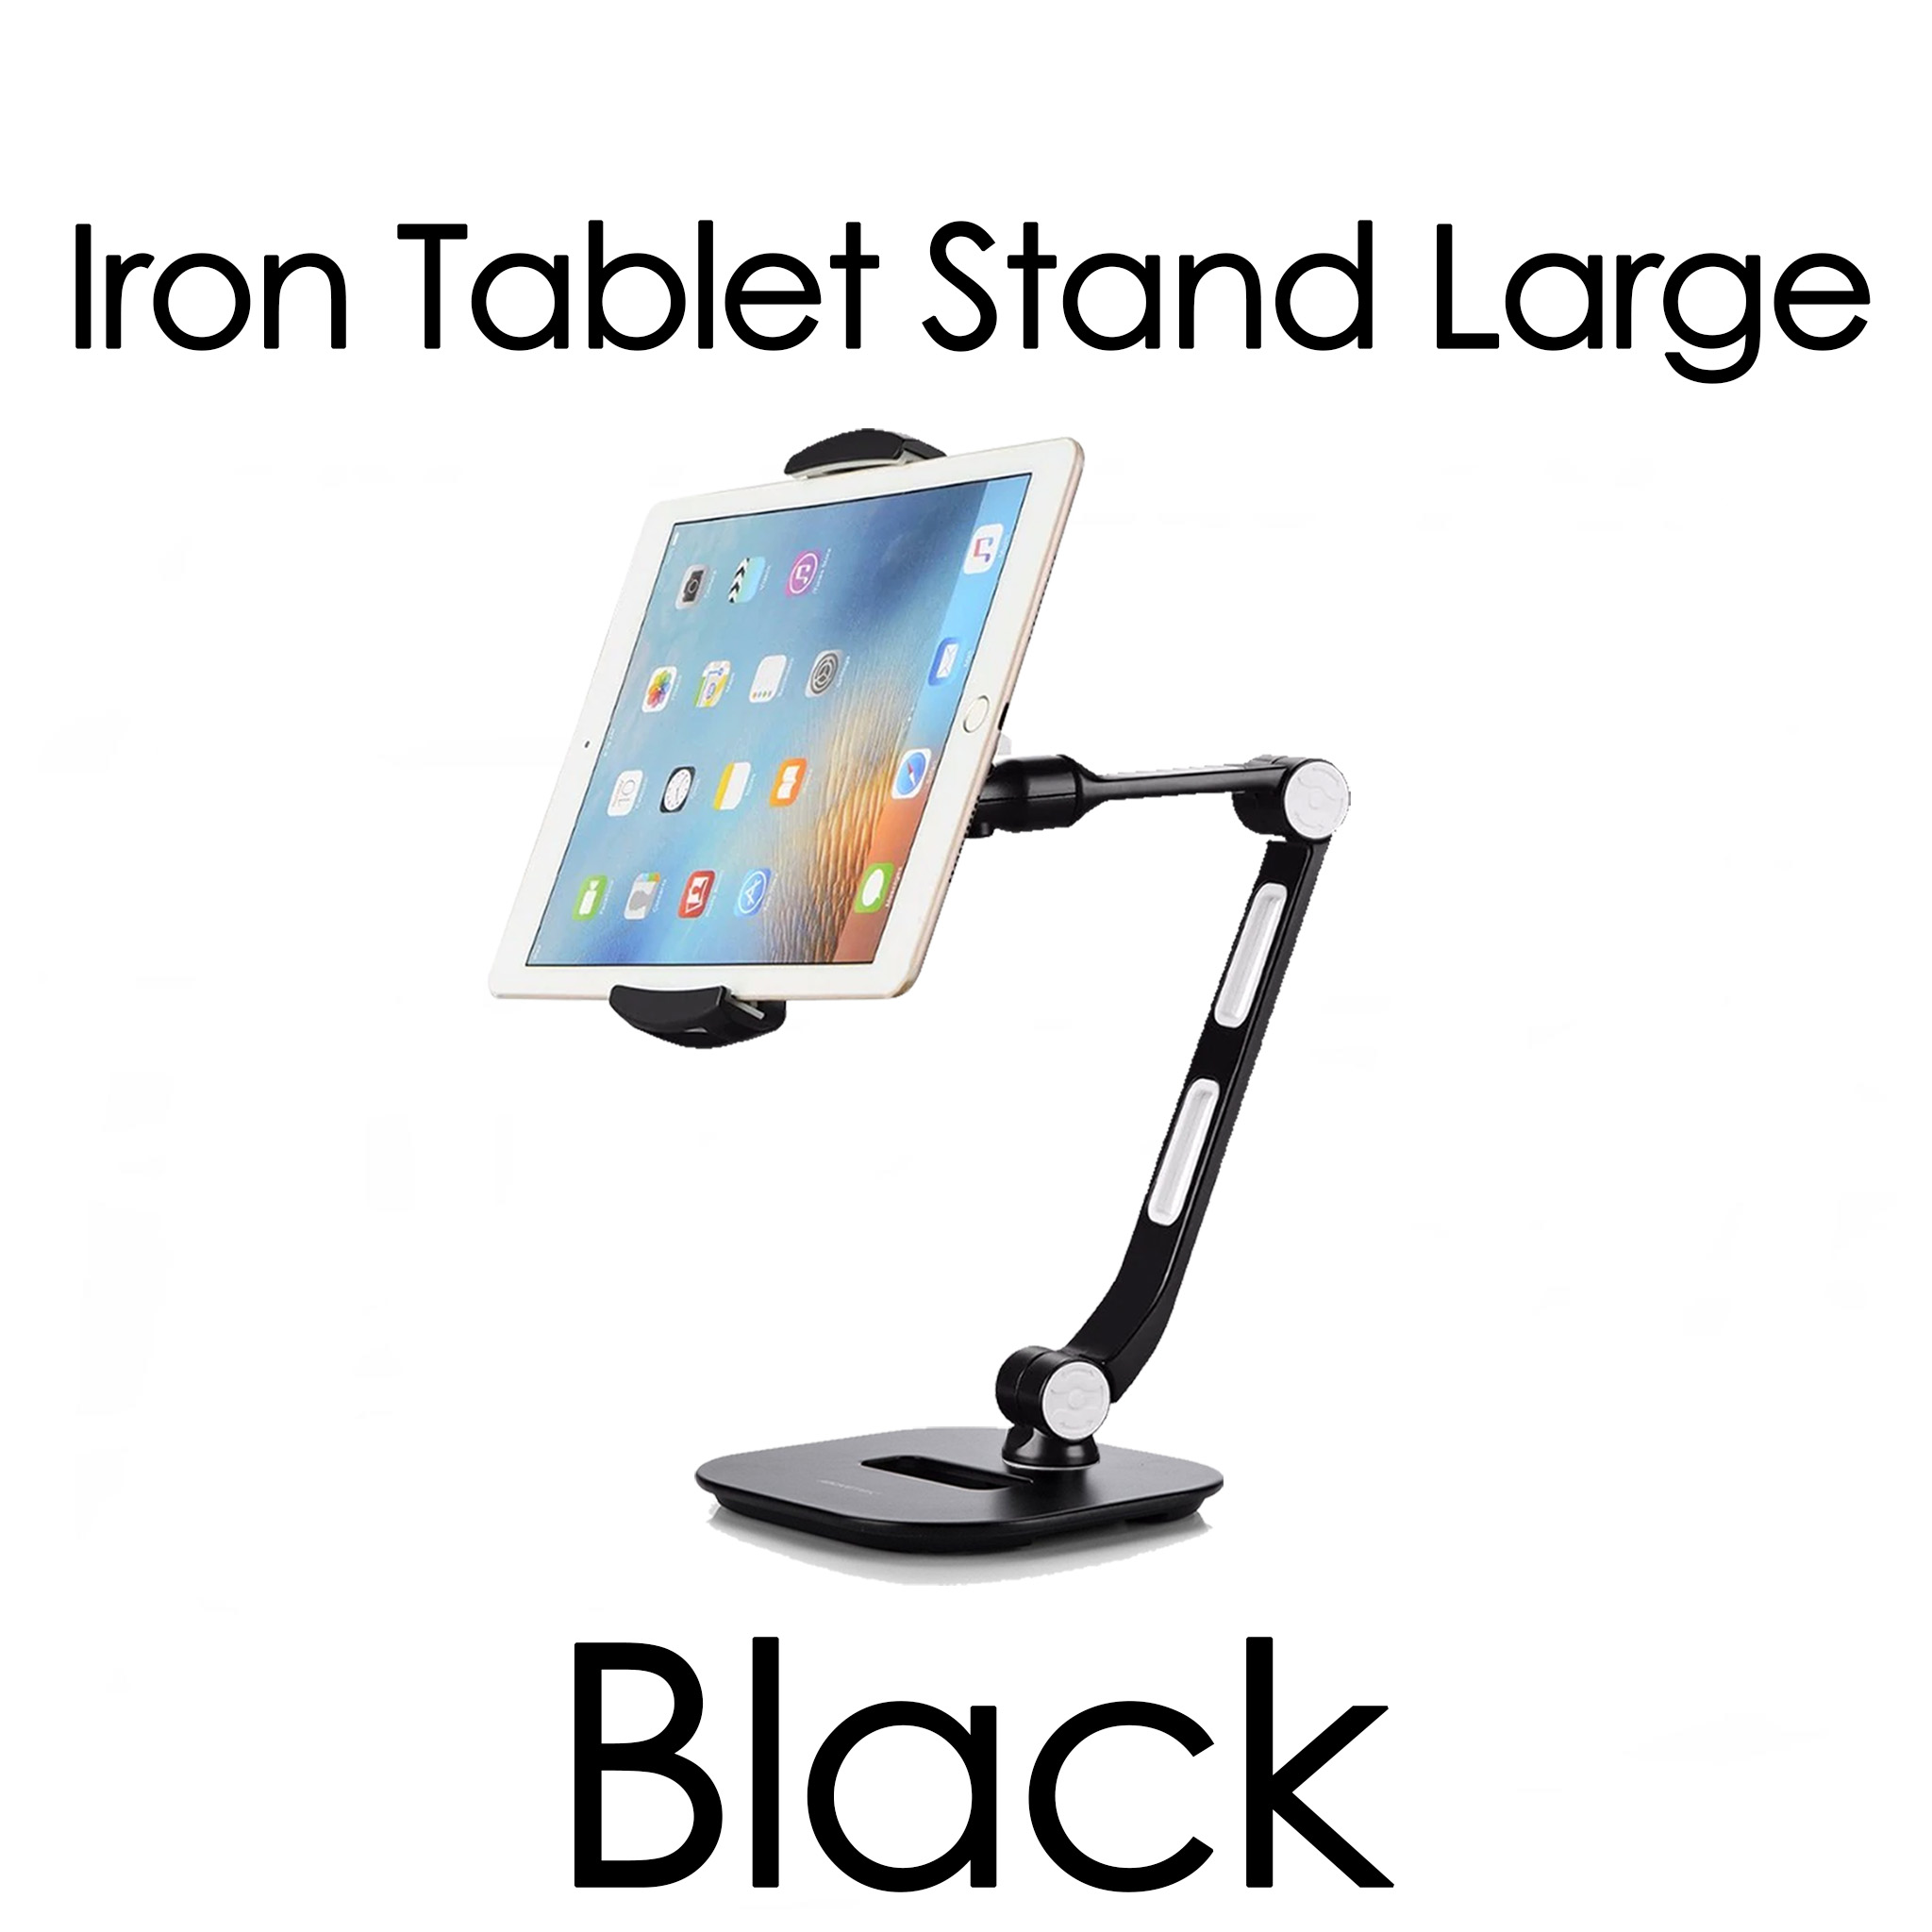 Ringke Iron Tablet Stand แท่นจับสมาร์ทโฟน / แท็ปเลต / iPad ใช้ได้กับขนาด 4 - 13 นิ้ว ปรับหมุนได้ 360 องศา จับแน่นกระชับ